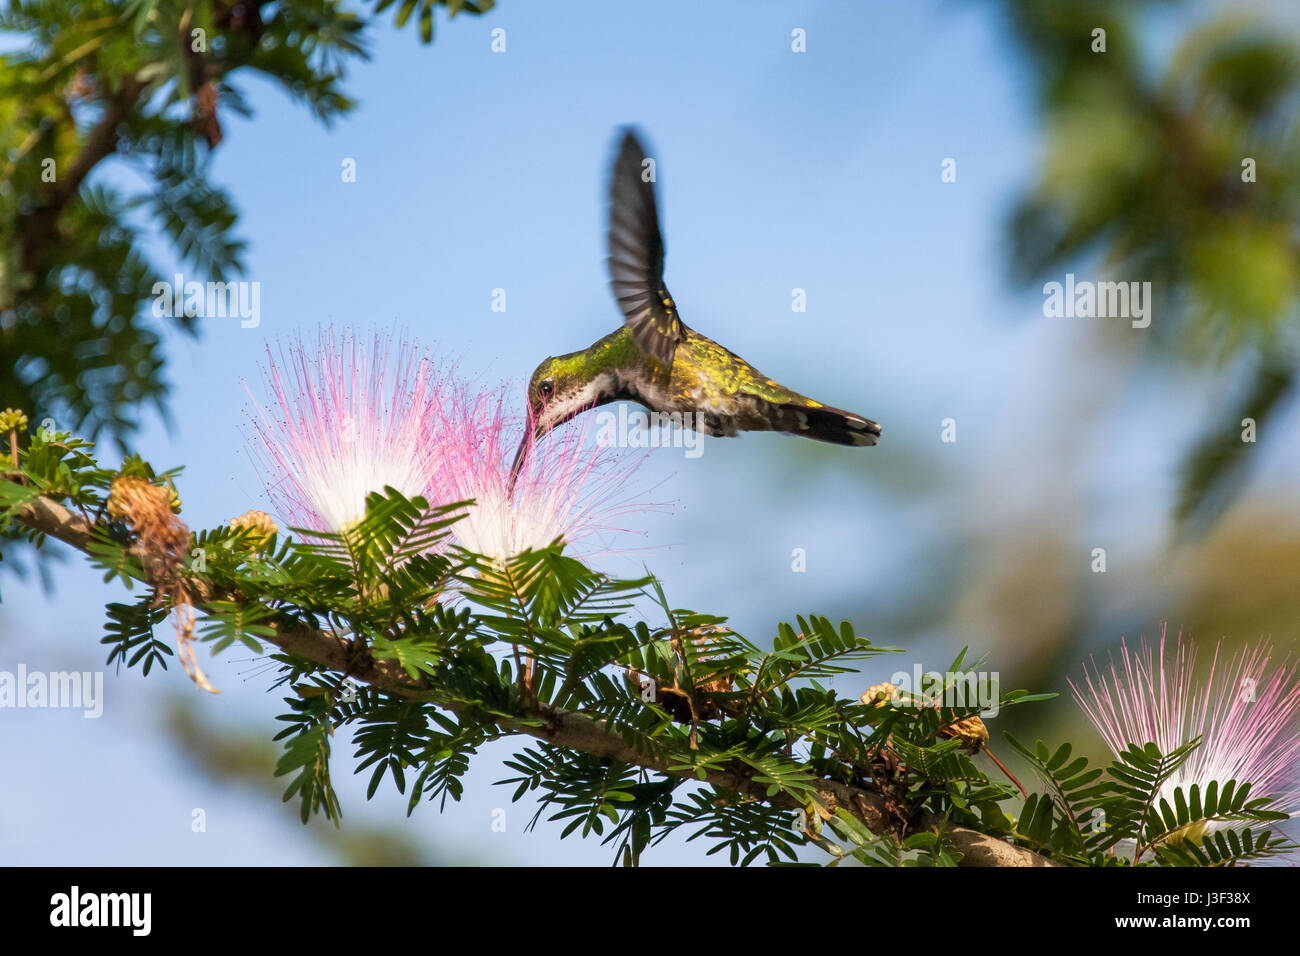 A hummingbird drinking nectar Stock Photo